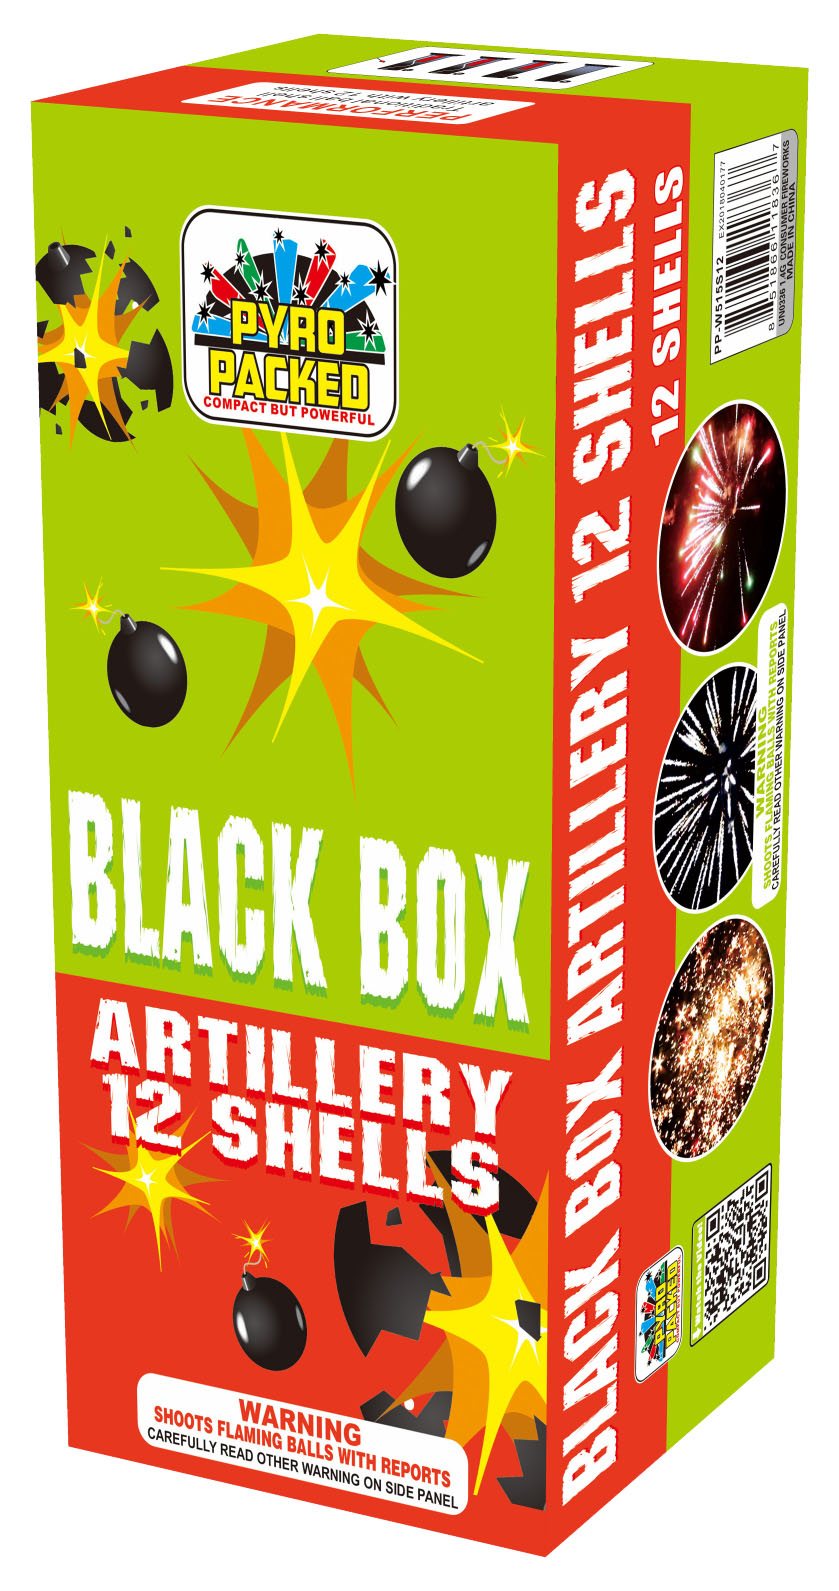 Black Box Artillery - Compact 12 shells